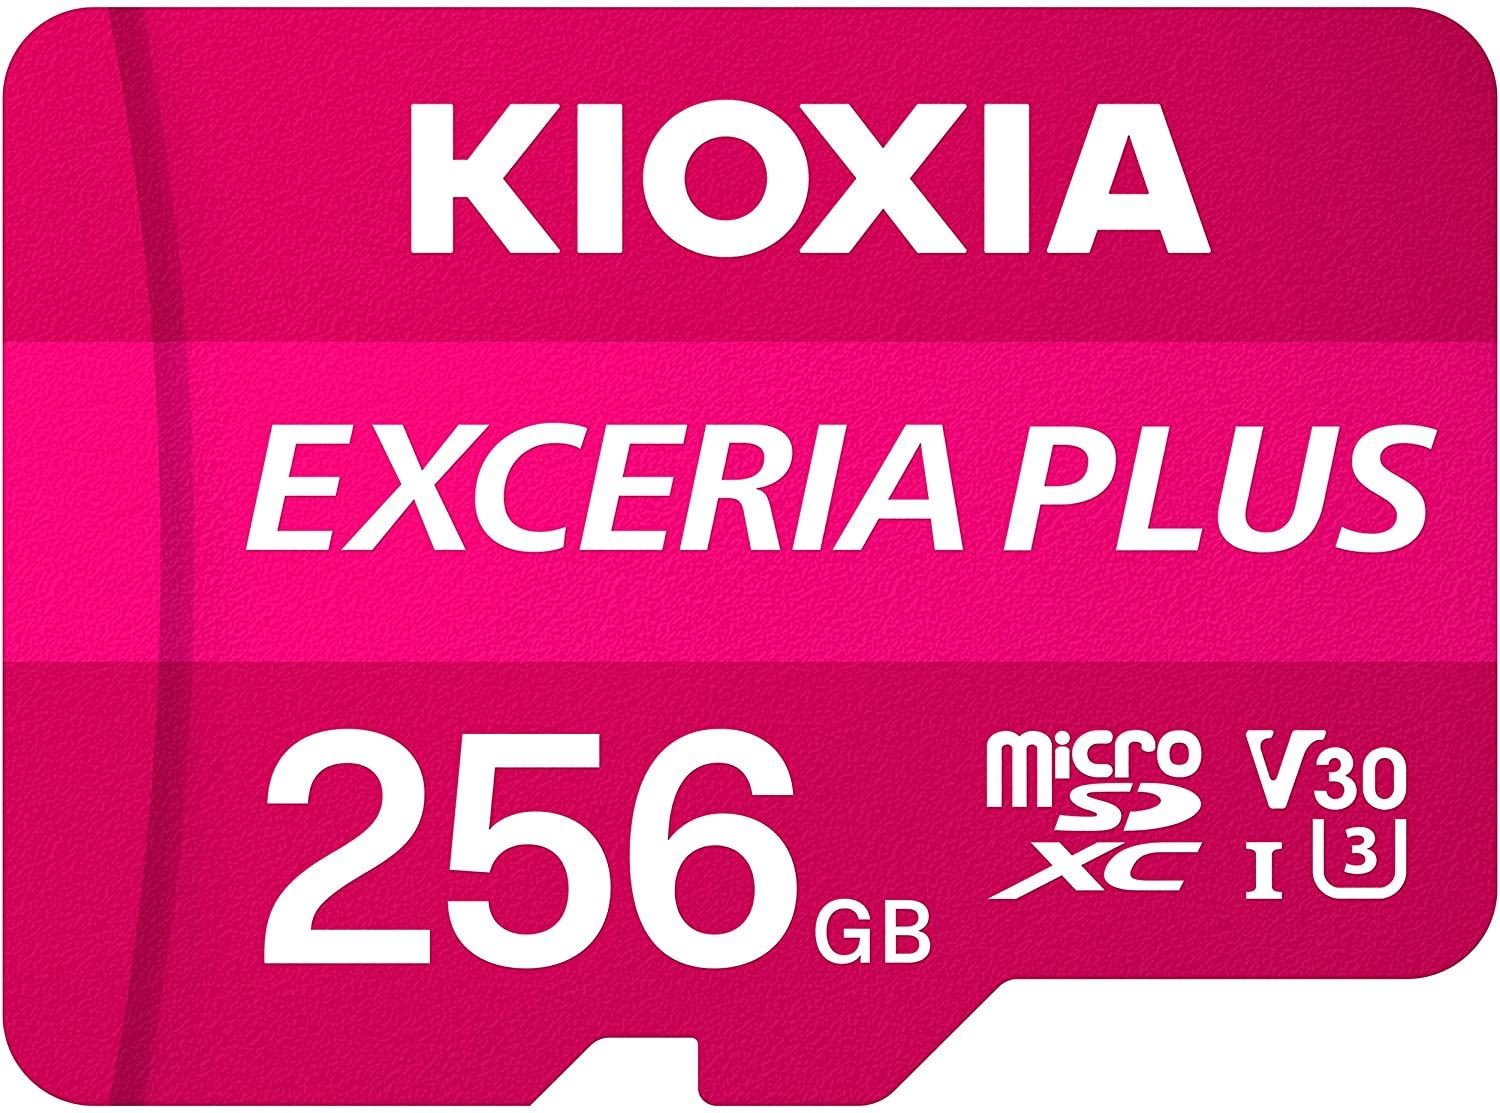 KIOXIA LMPL1M256GG2 256GB EXCERIA PLUS microSD C10 U3 V30 UHS1 A1 Hafıza kartı